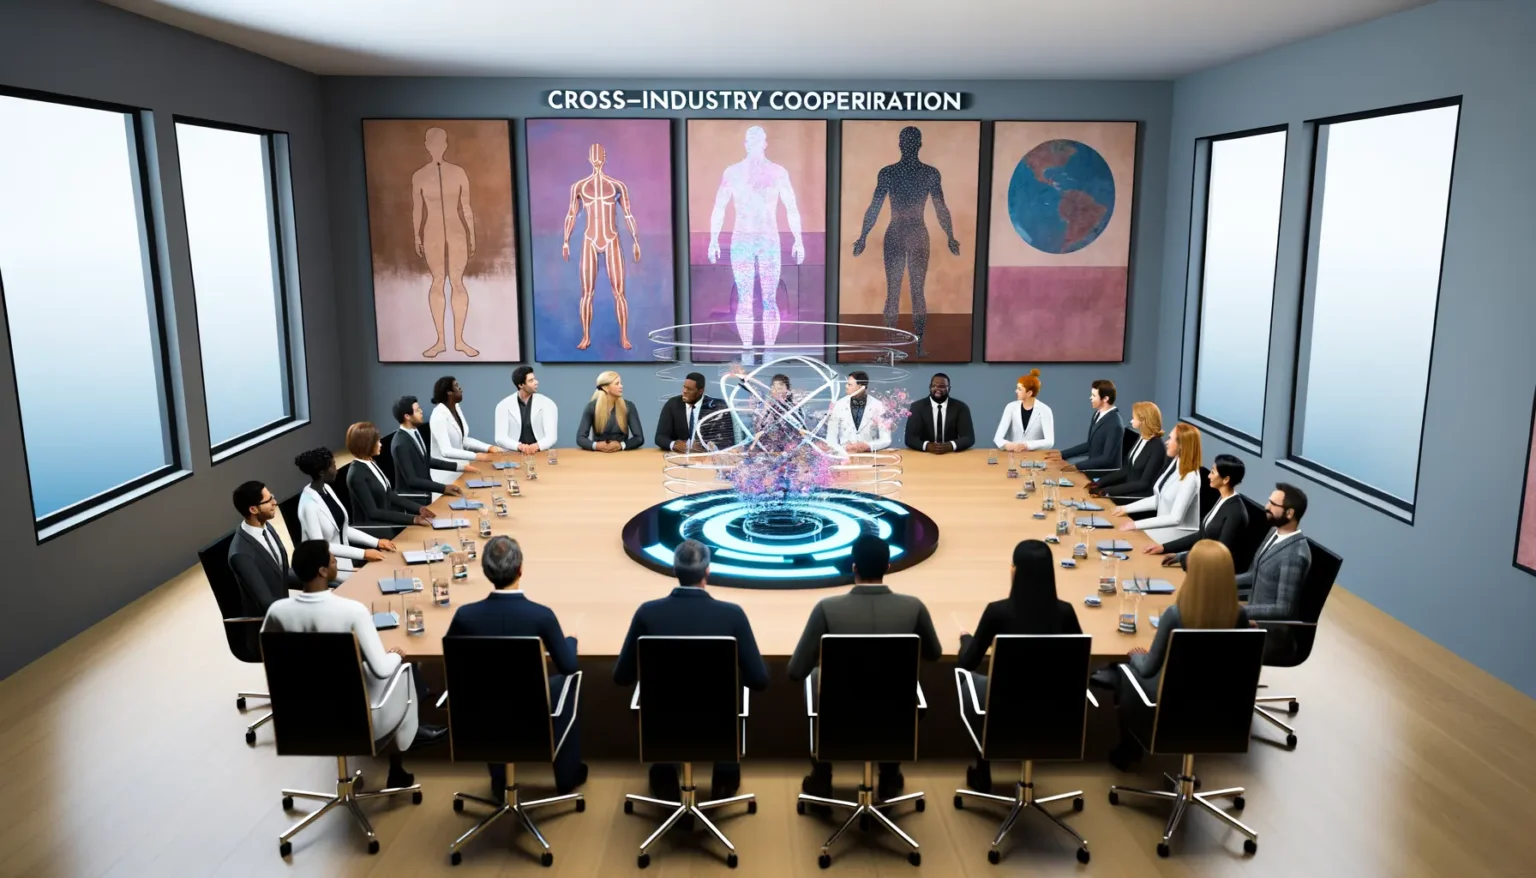 Eine Gruppe von Geschäftsleuten sitzt an einem ovalen Konferenztisch in einem modernen Besprechungszimmer. In der Mitte des Tisches befindet sich eine futuristische, holographische Darstellung. An der Wand hinter ihnen hängen Bilder, die zur Zusammenarbeit zwischen verschiedenen Industrien zu passen scheinen, und über ihnen steht der Text "CROSS-INDUSTRY COOPERATION".